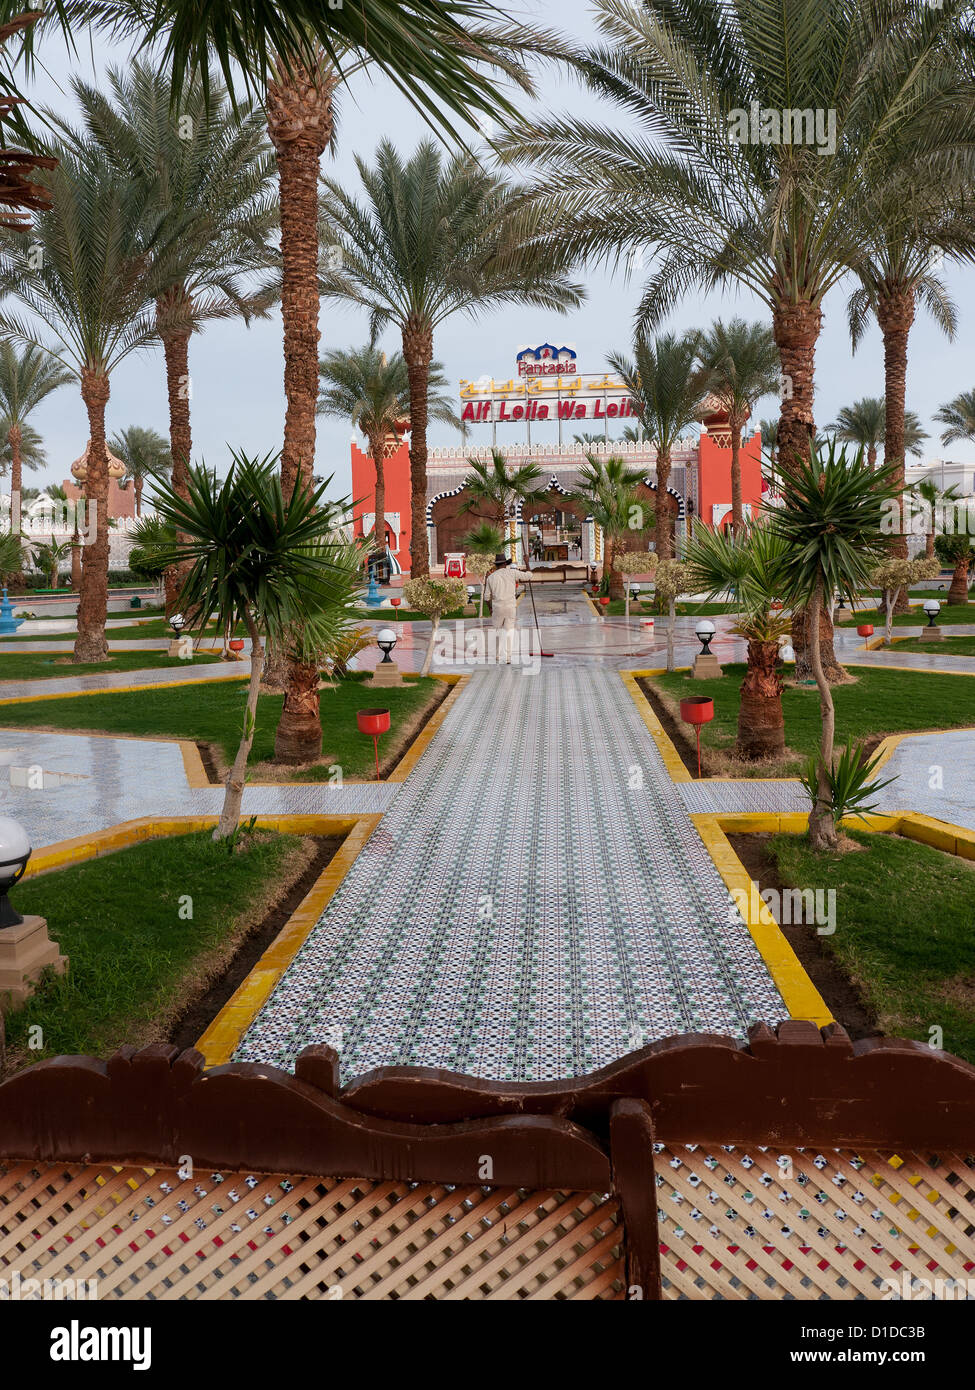 Jardins d'intérieur de Fantasia, un centre de divertissement à Charm El Cheikh, Egypte Banque D'Images